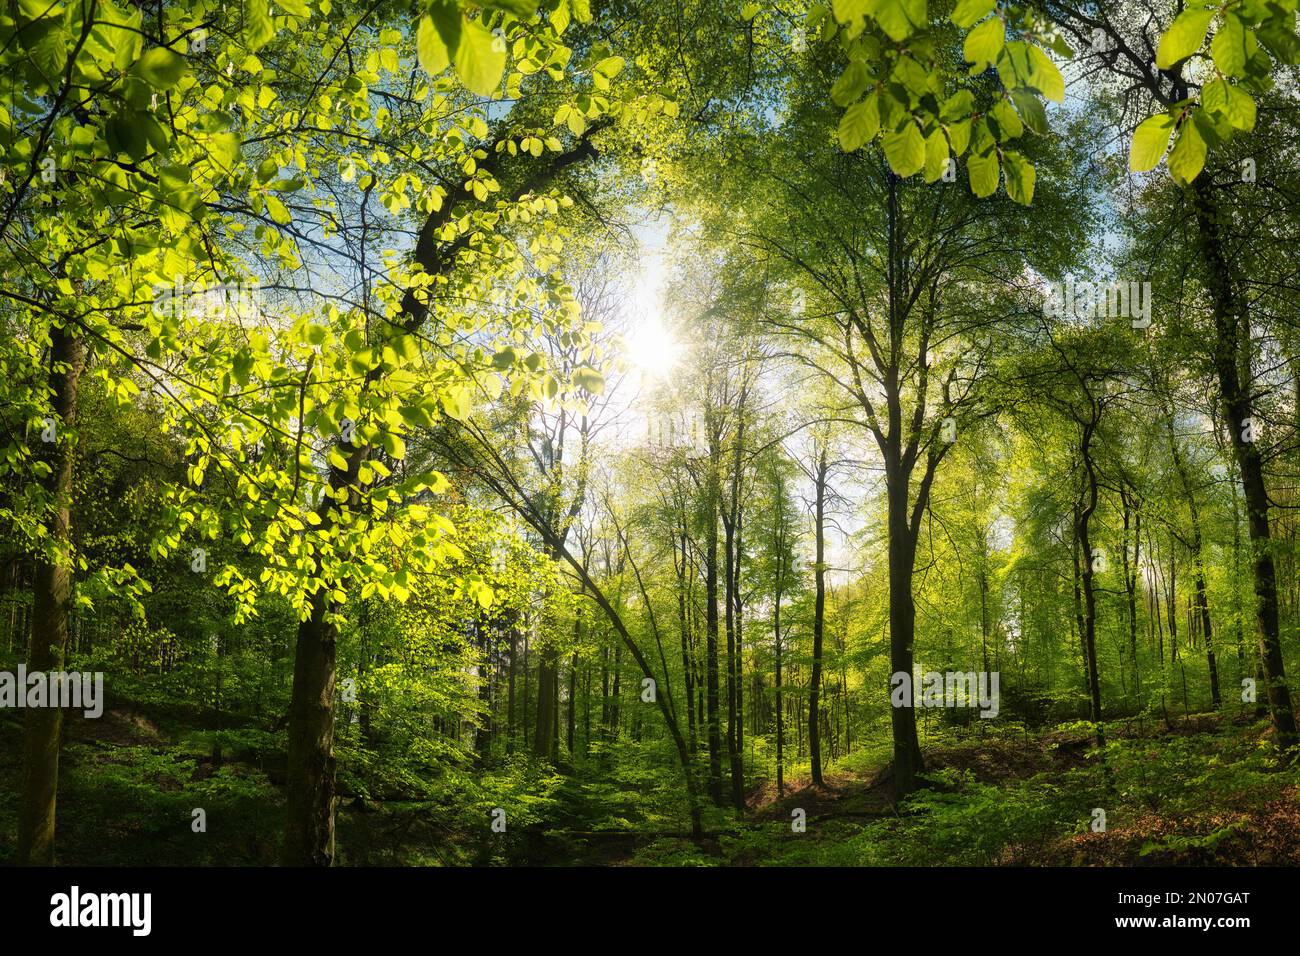 Bella foresta di faggio con sole piacevole, un paesaggio tranquillo girato con alberi verdi vibranti e il sole che getta i raggi attraverso le foglie Foto Stock